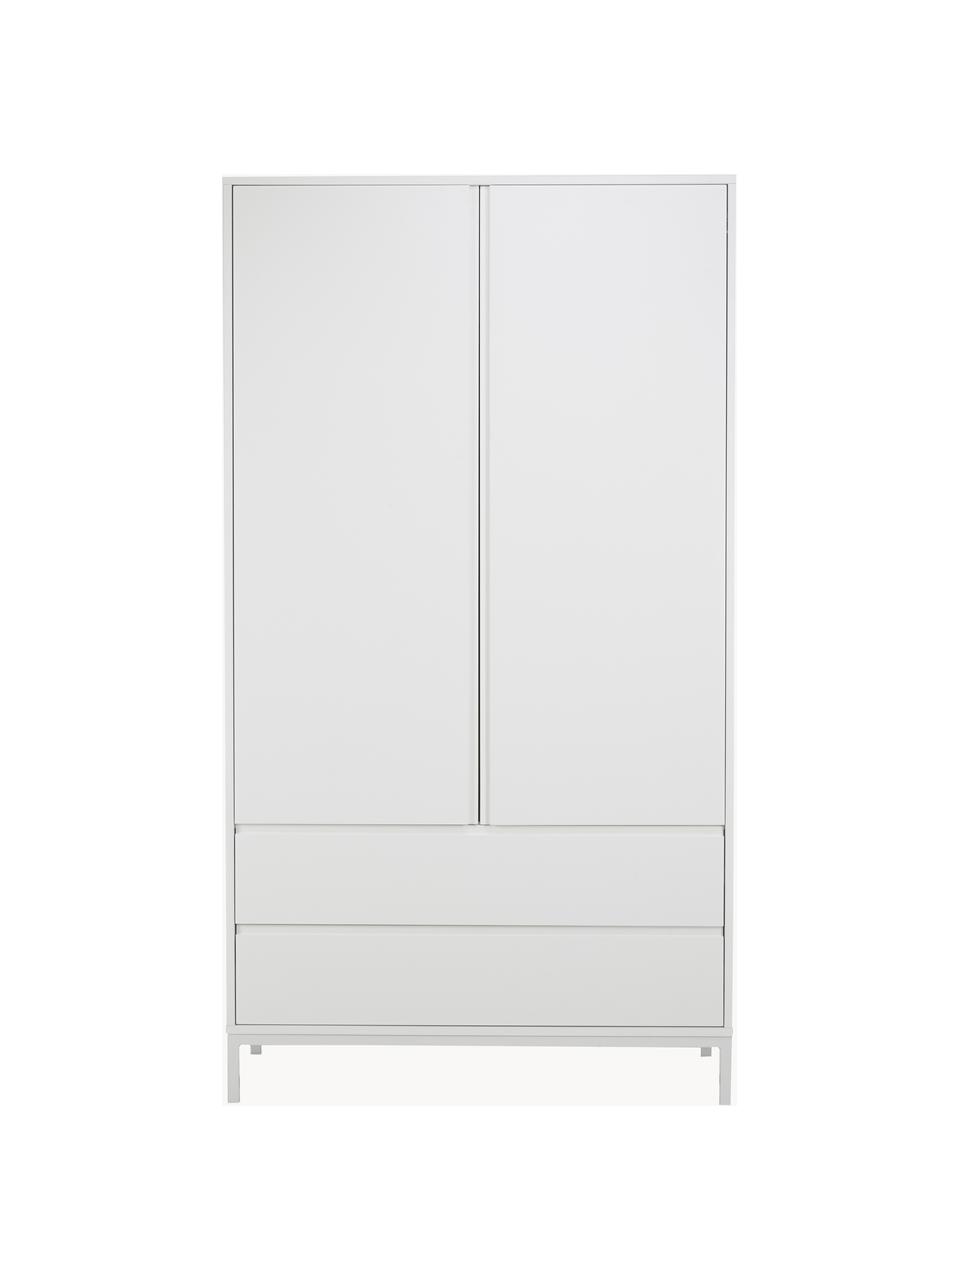 Armoire classique blanche Ikaro, 2 portes, Blanc, larg. 110 x haut. 200 cm